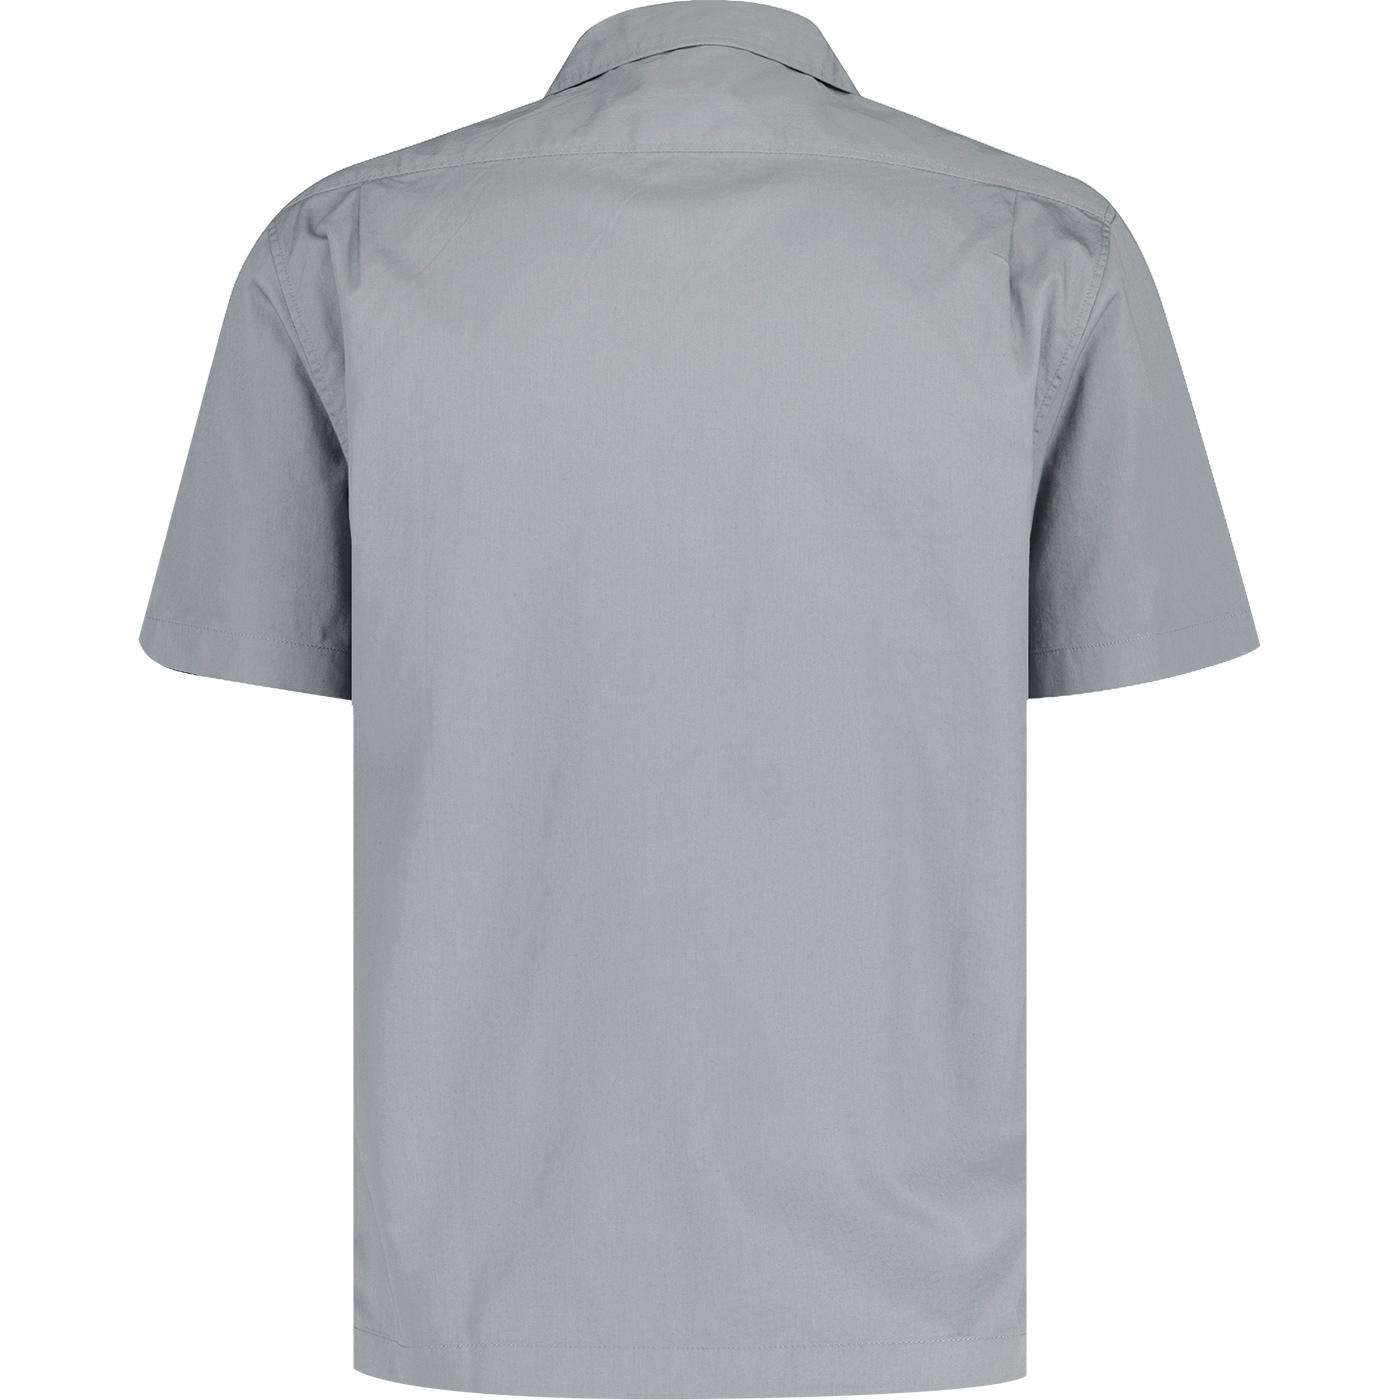 LEE JEANS CHETOPA Retro Cotton Twill S/S Shirt in New Gray